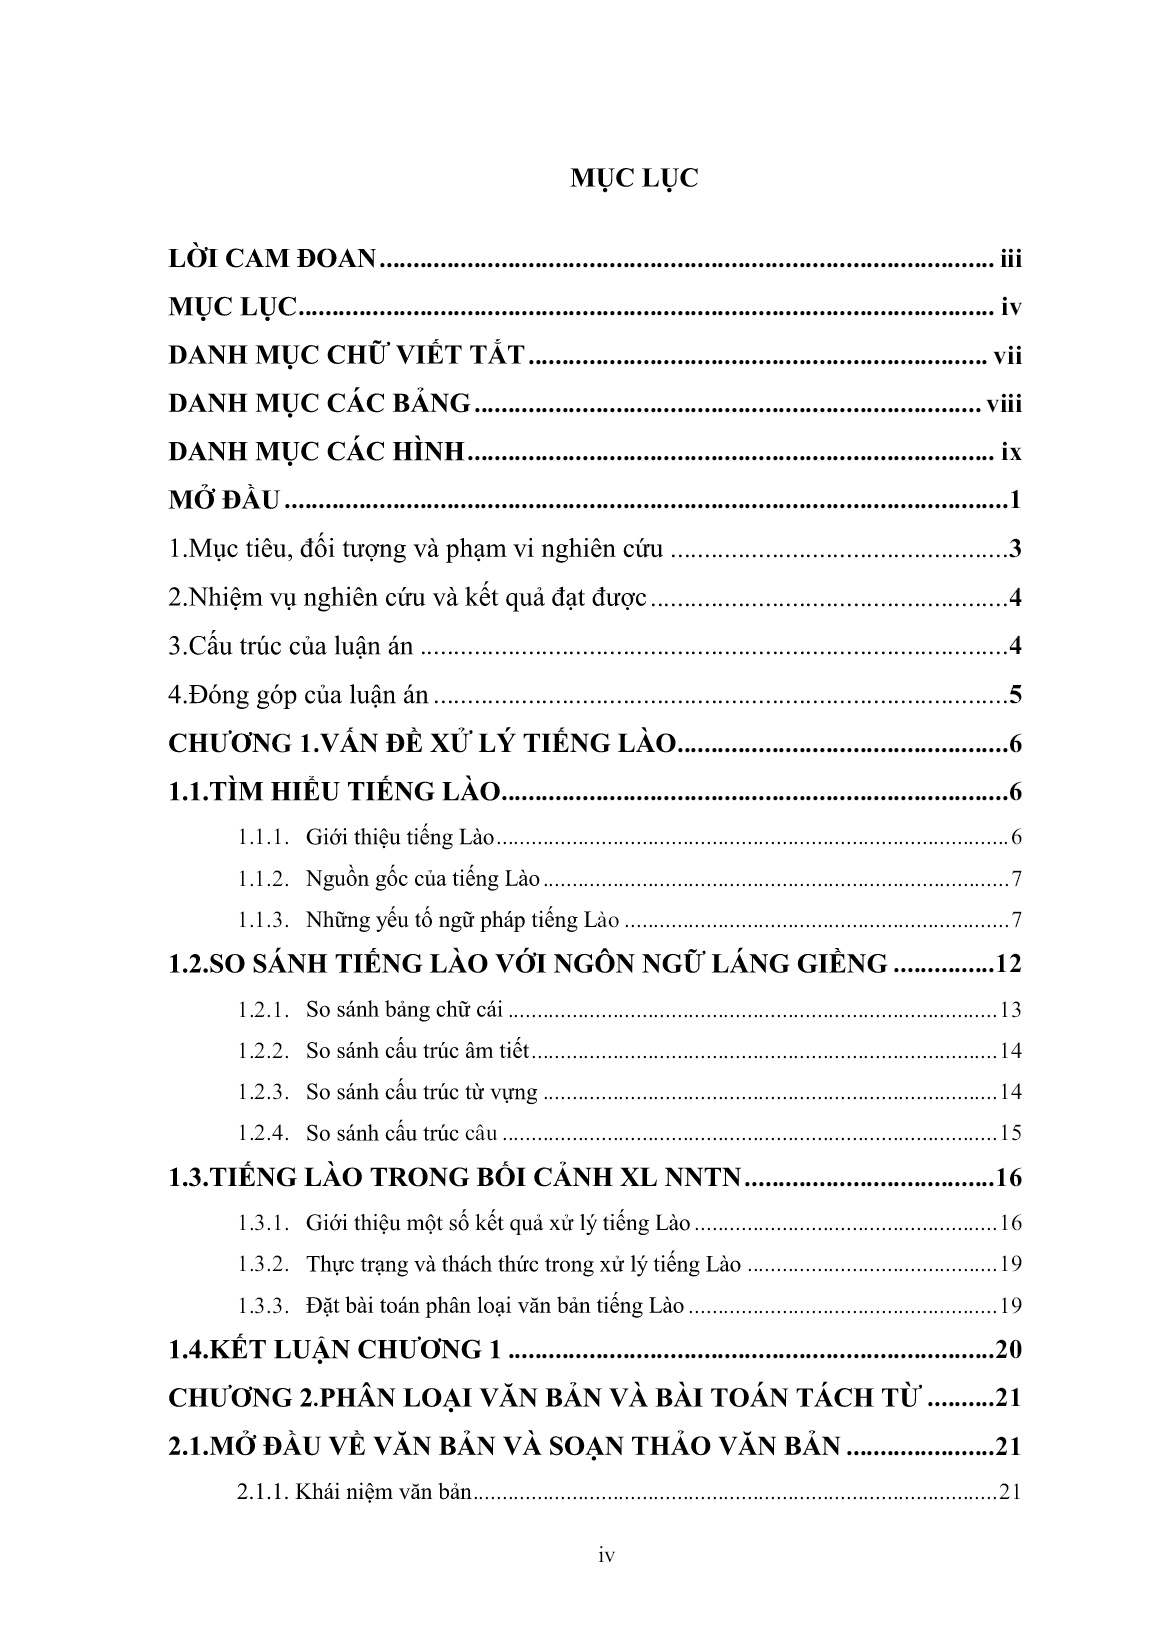 Luận án Nghiên cứu các phương pháp tách từ phục vụ phân loại văn bản tiếng Lào trang 4